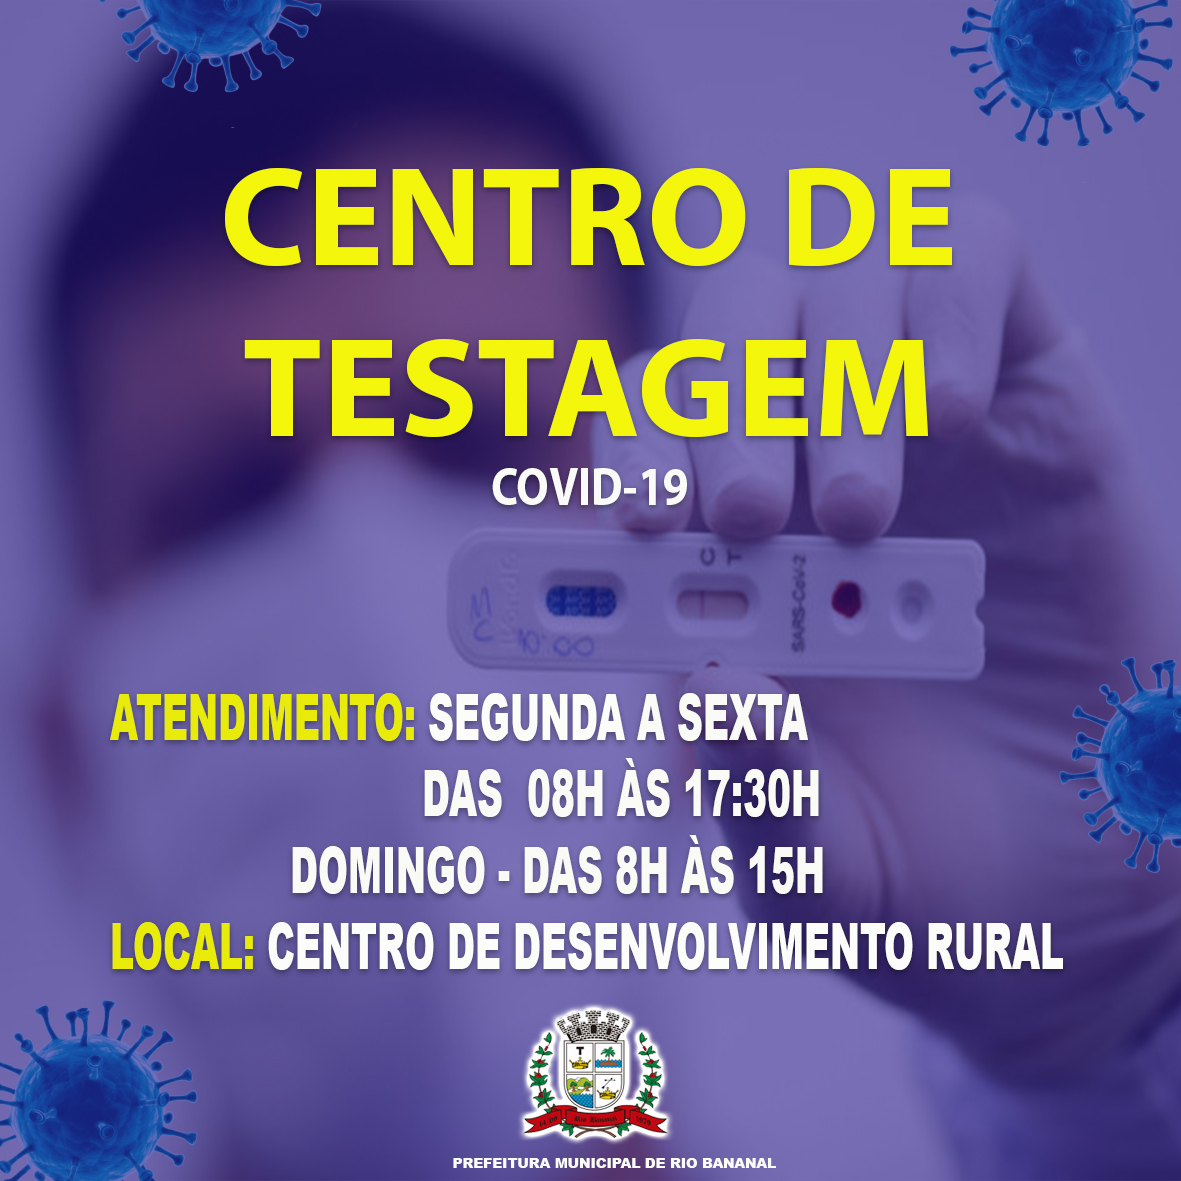 IMAGEM CENTRO DE TESTAGEM COVID-19 NO CENTRO DE DESENVOLVIMENTO RURAL NESTA TERÇA-FEIRA (19)